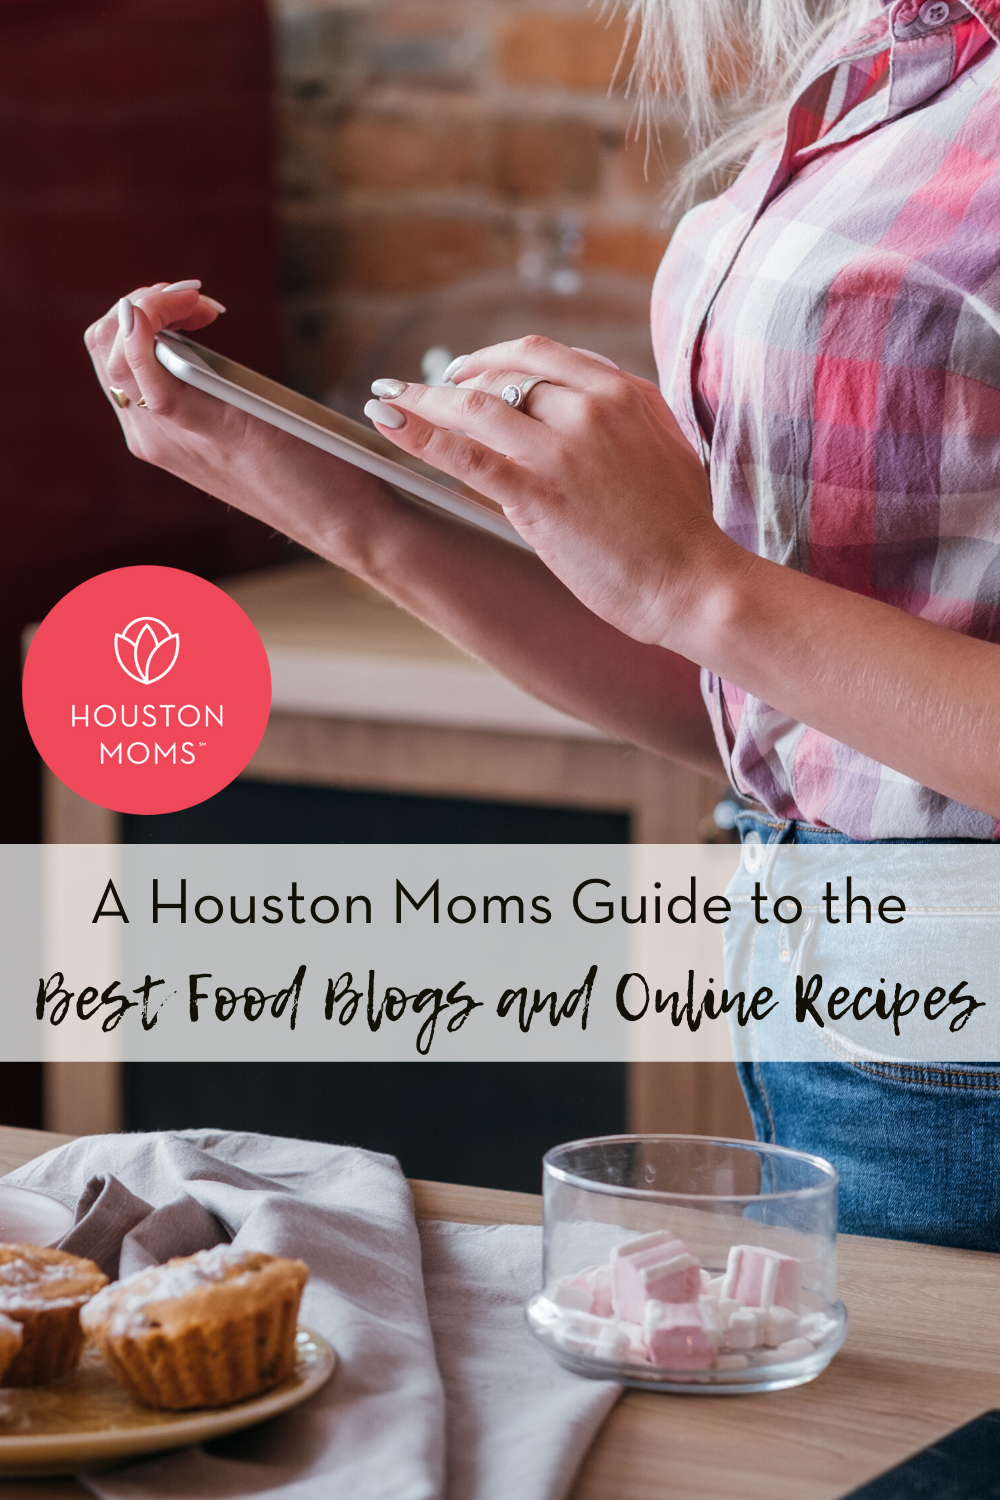 Houston Moms "A Houston Moms Guide to the Best Food Blogs and Online Recipes" #houstonmoms #houstonmomsblog #momsaroundhouston